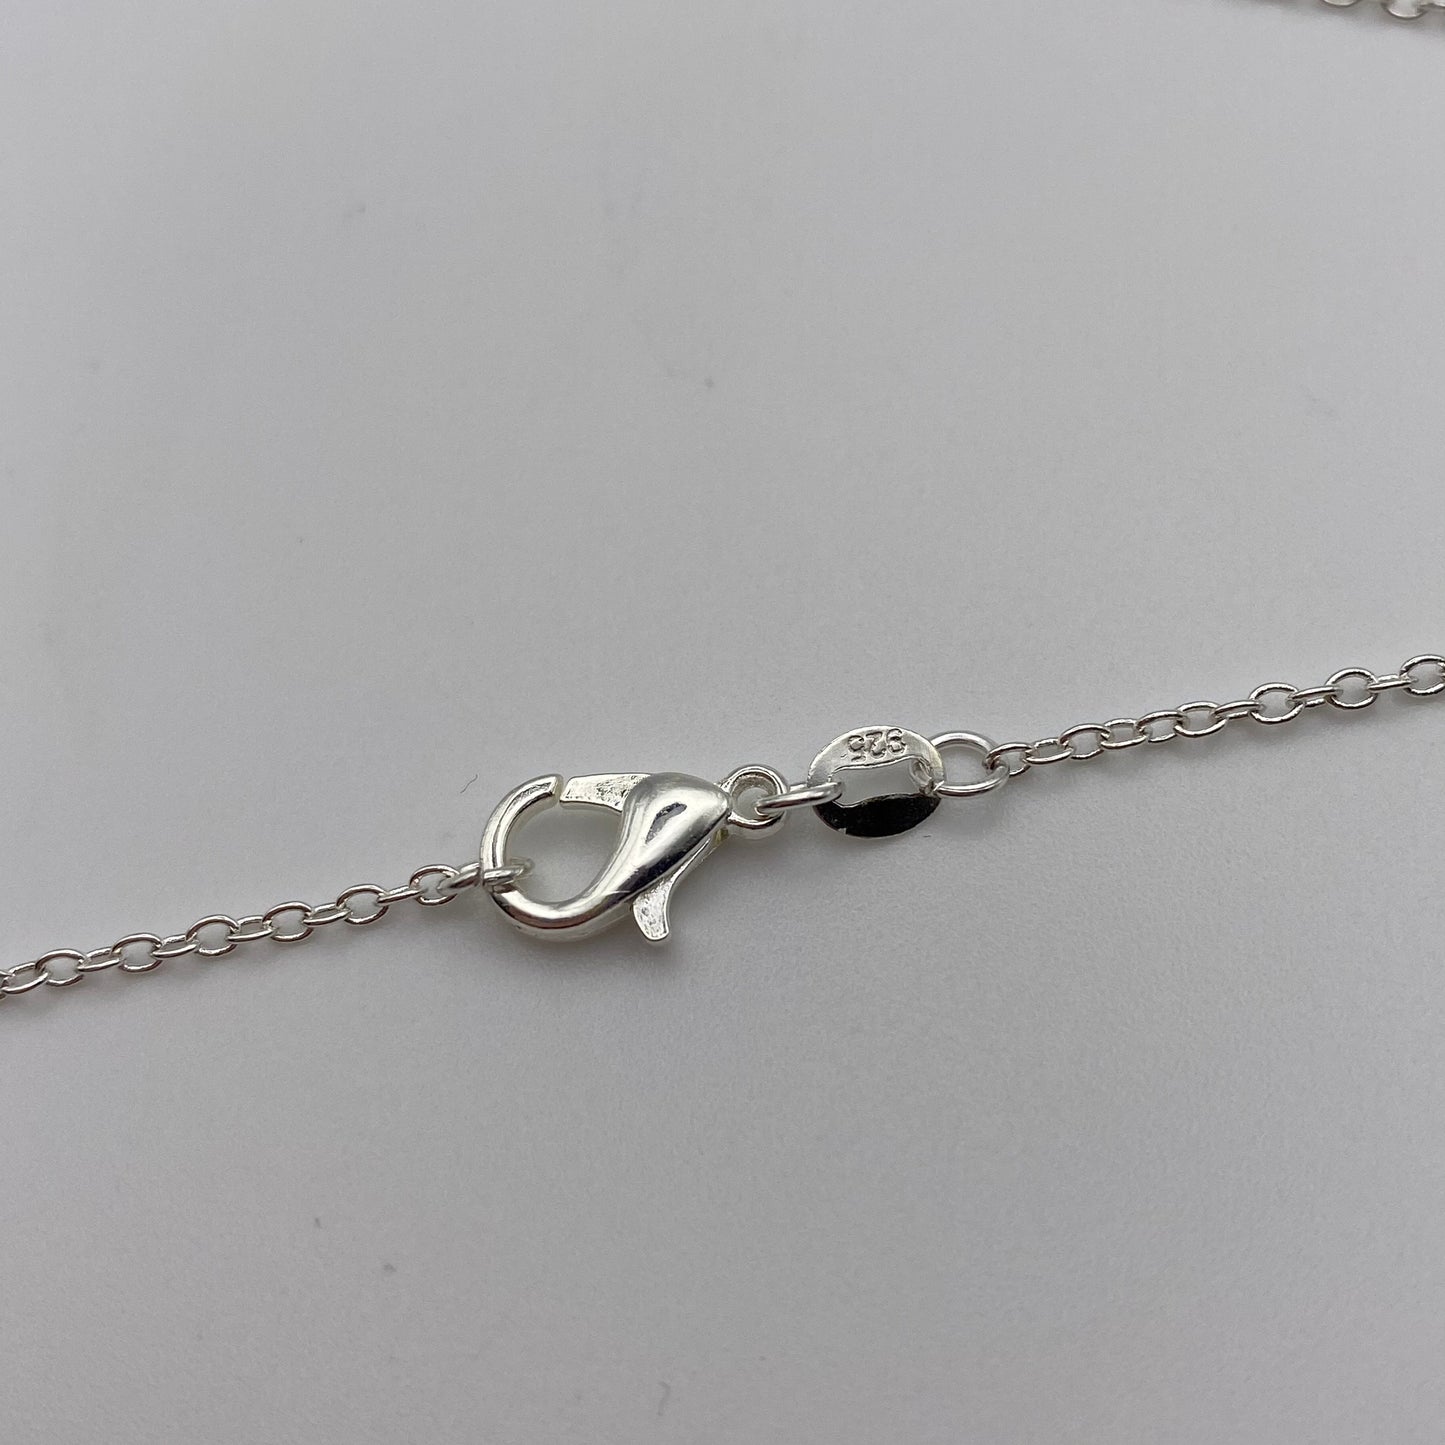 Small Silver Sun Necklace